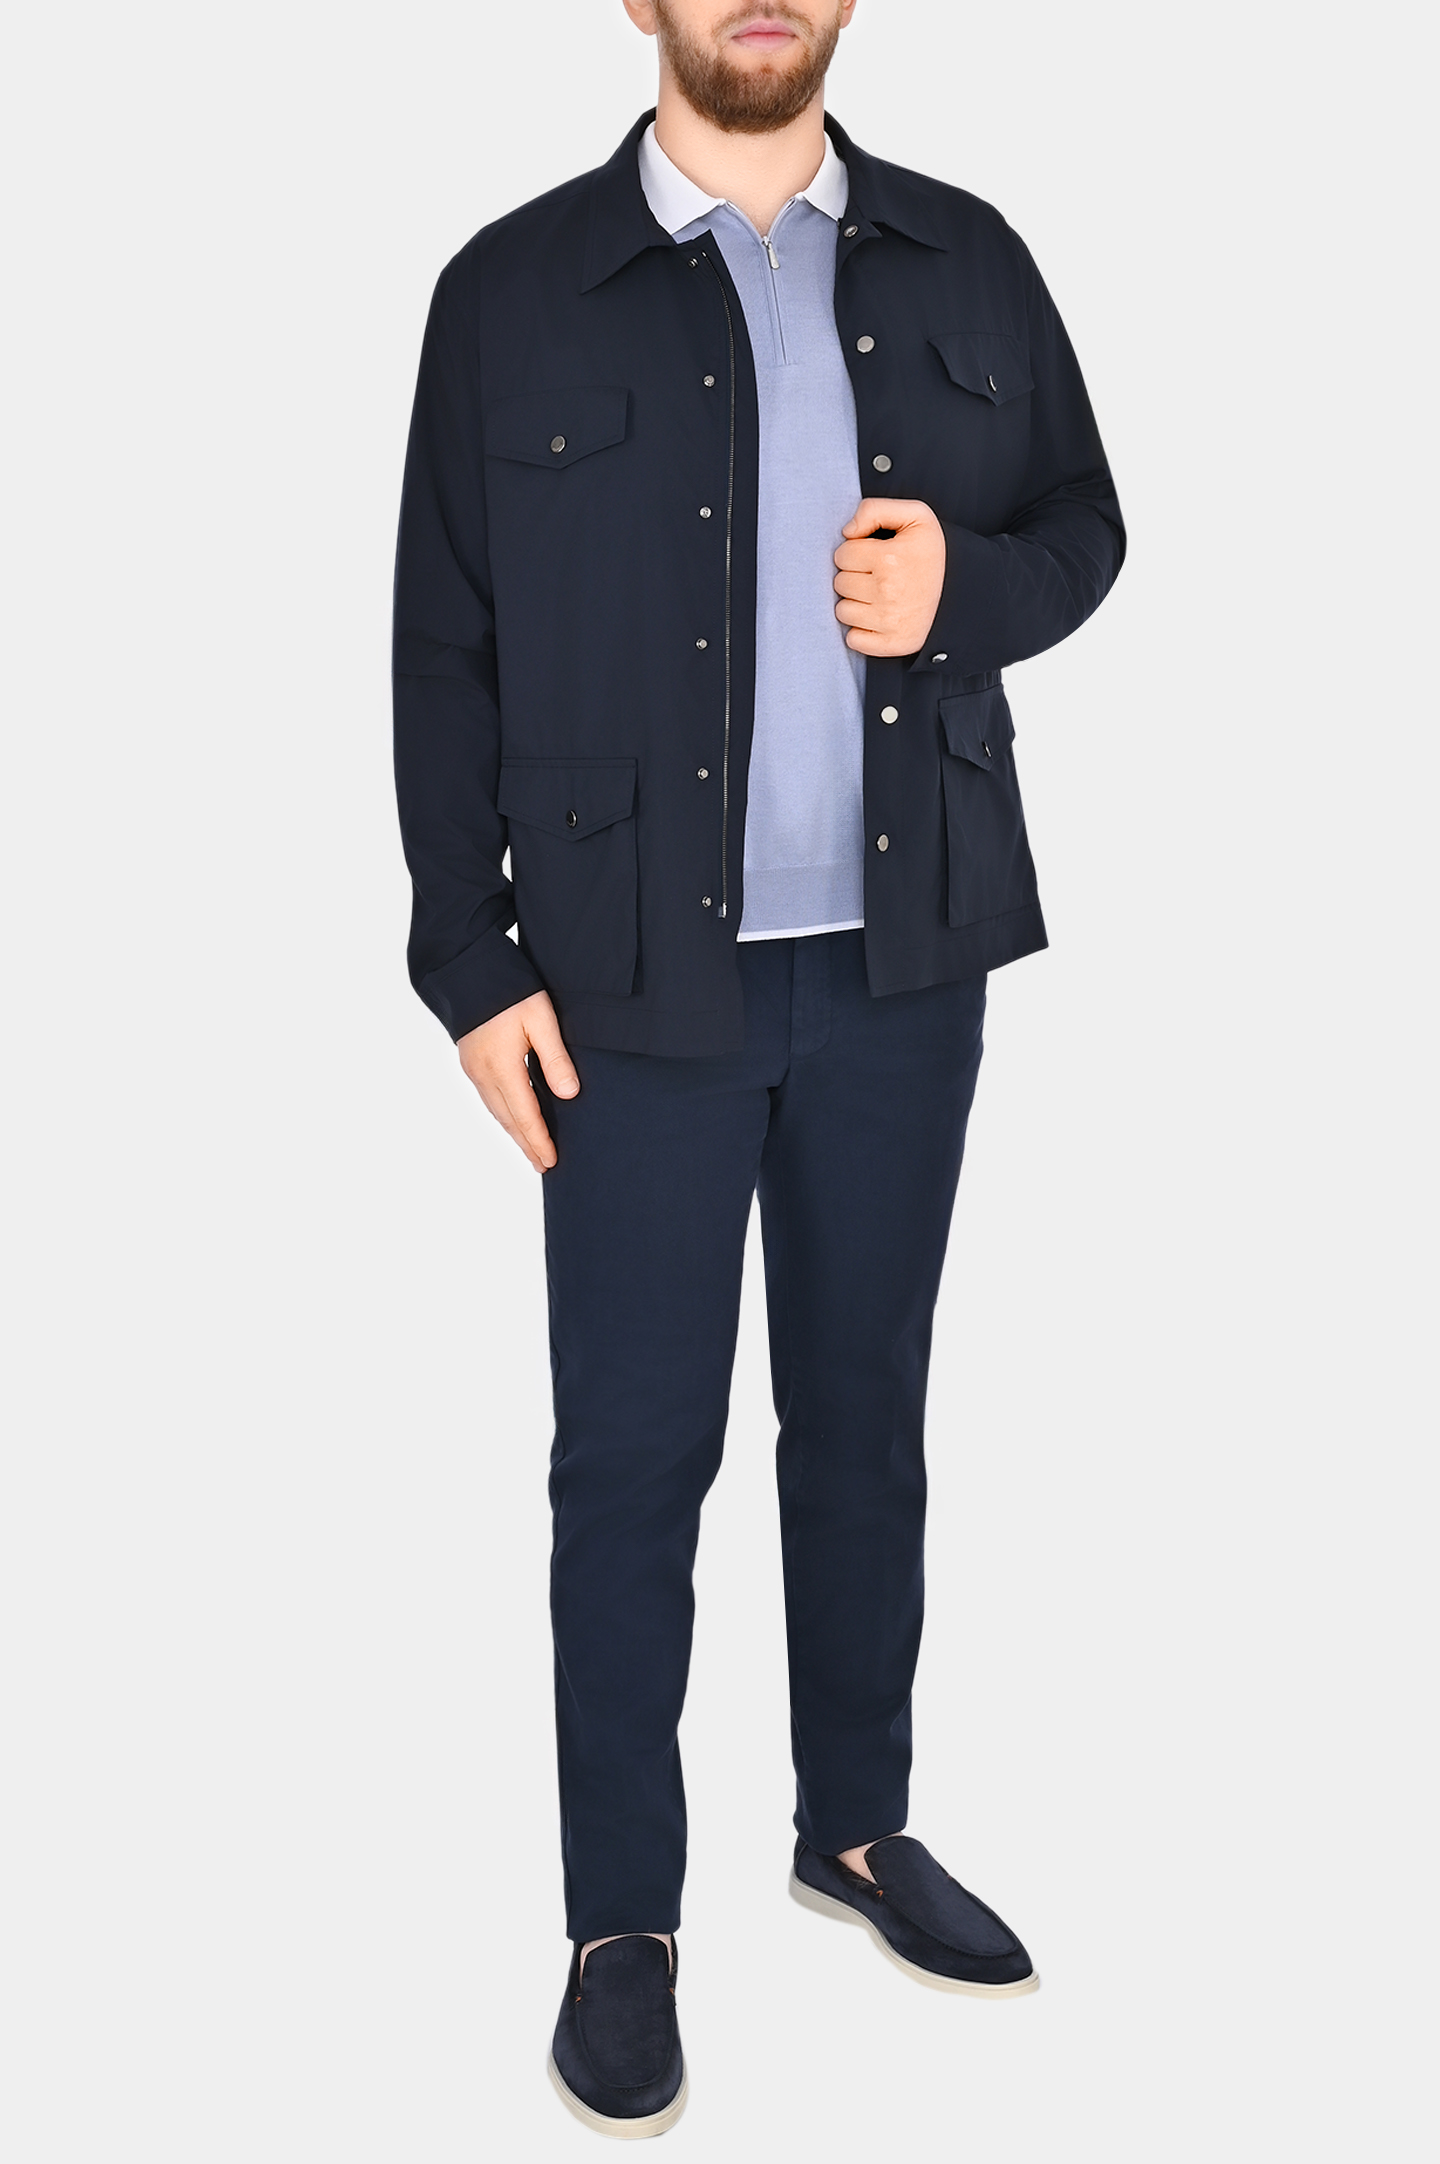 Куртка на кнопках с карманами COLOMBO GI00451/-/T0283, цвет: Темно-синий, Мужской